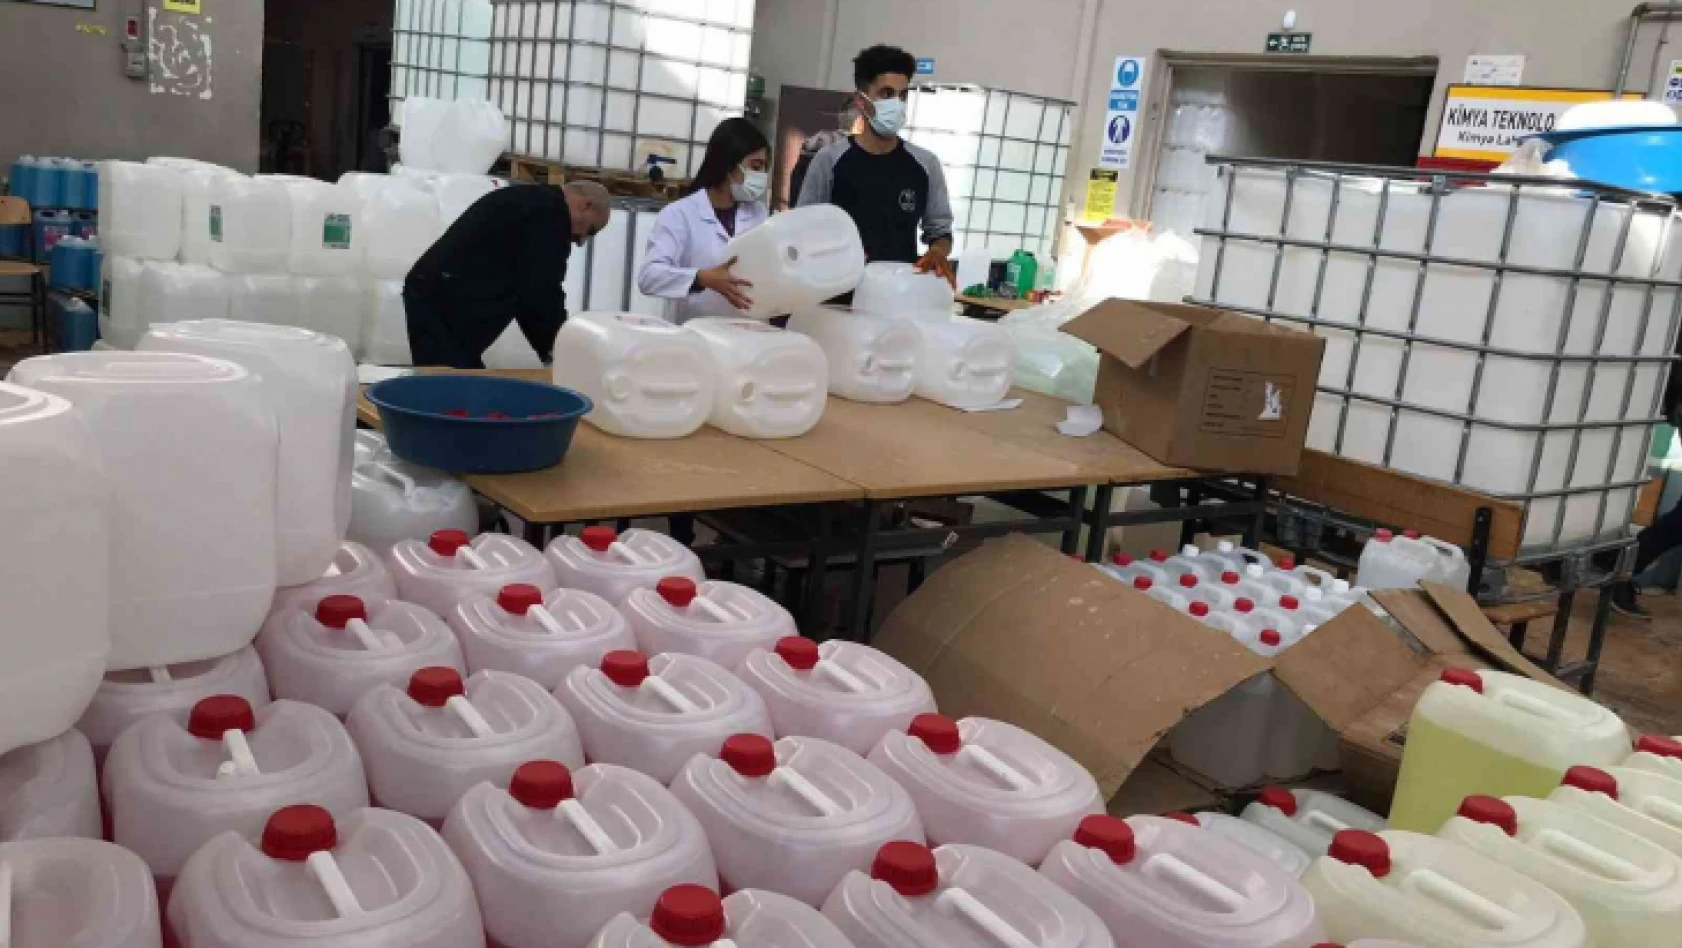 Elazığ'da fabrika gibi okul: Öğretmen ve öğrenciler el ele verdi hijyen malzemesi üreterek 3 milyon lira ciroya ulaşıldı